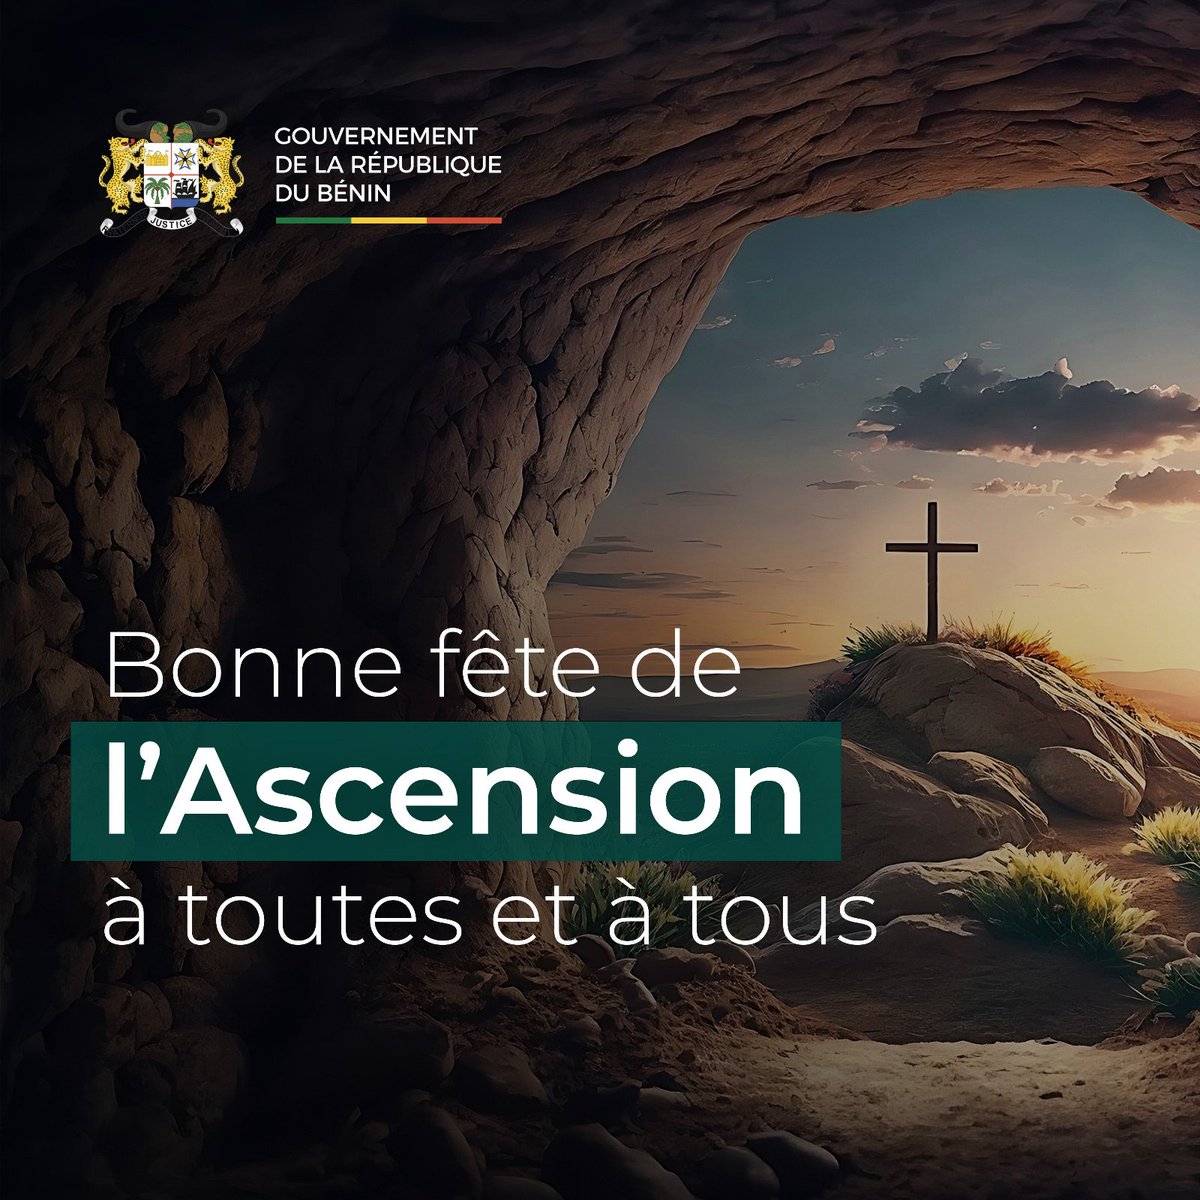 #Gouvbenin | #Wasexo | #AscensionDay | Le Gouvernement du Bénin souhaite une bonne célébration de l'#Ascension à toute la communauté chrétienne du Bénin.